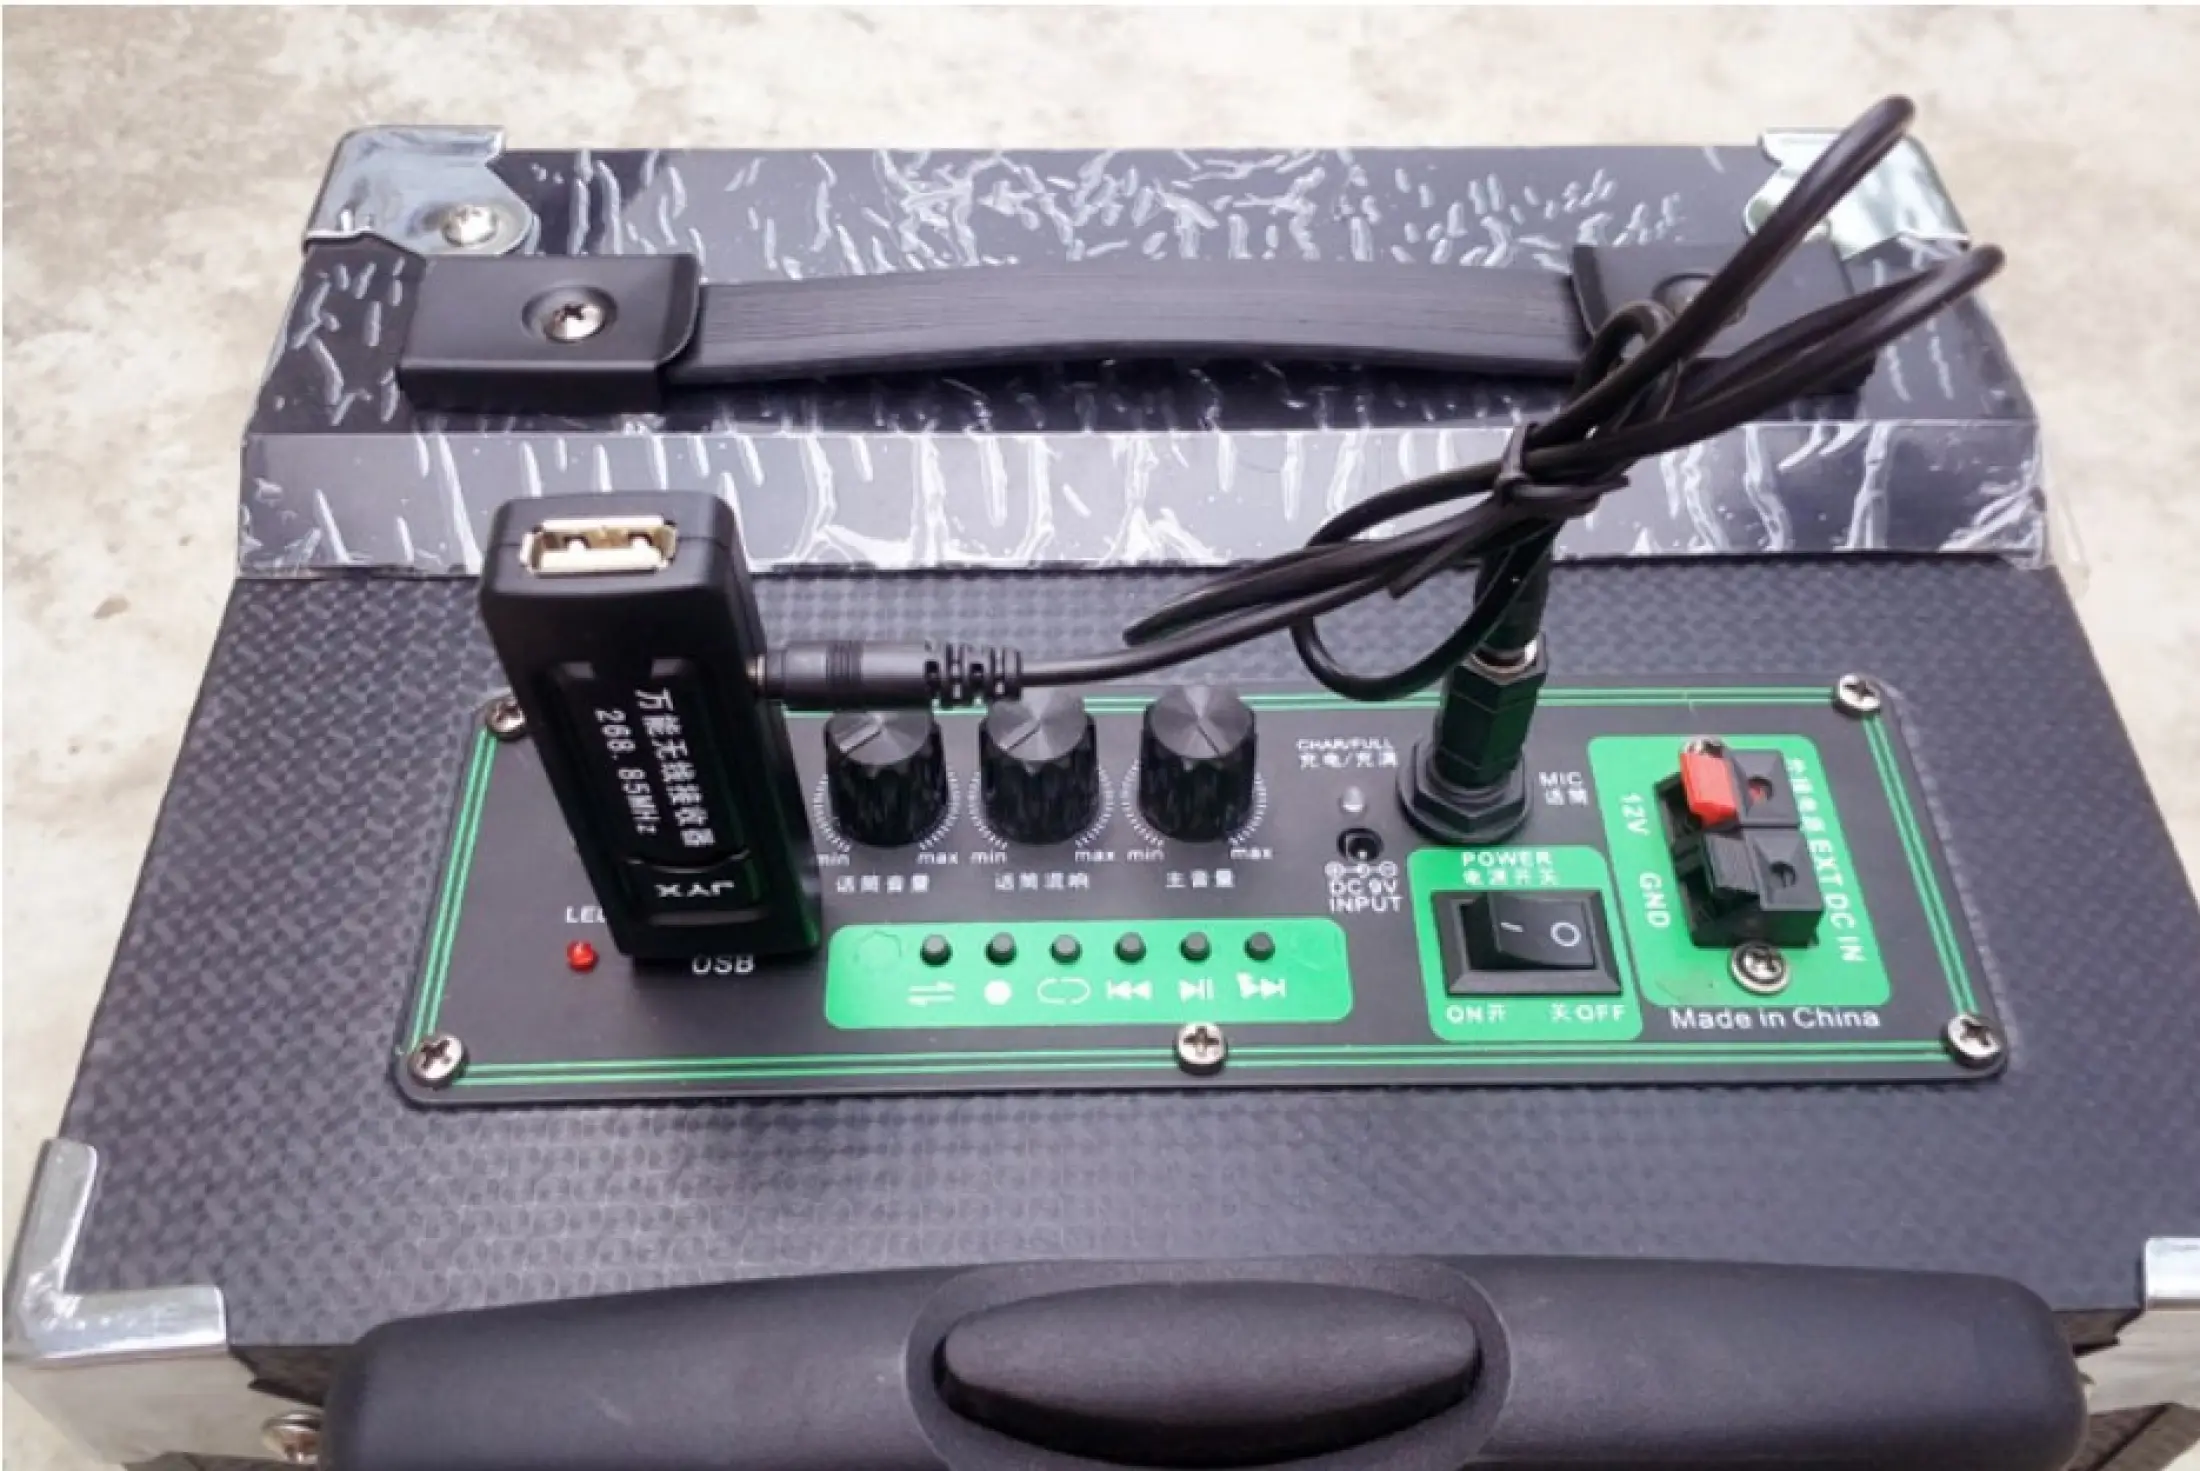 Bộ 2 micro Karaoke không dây đa năng Băng tần UHF V20 cho DÙNG CHO